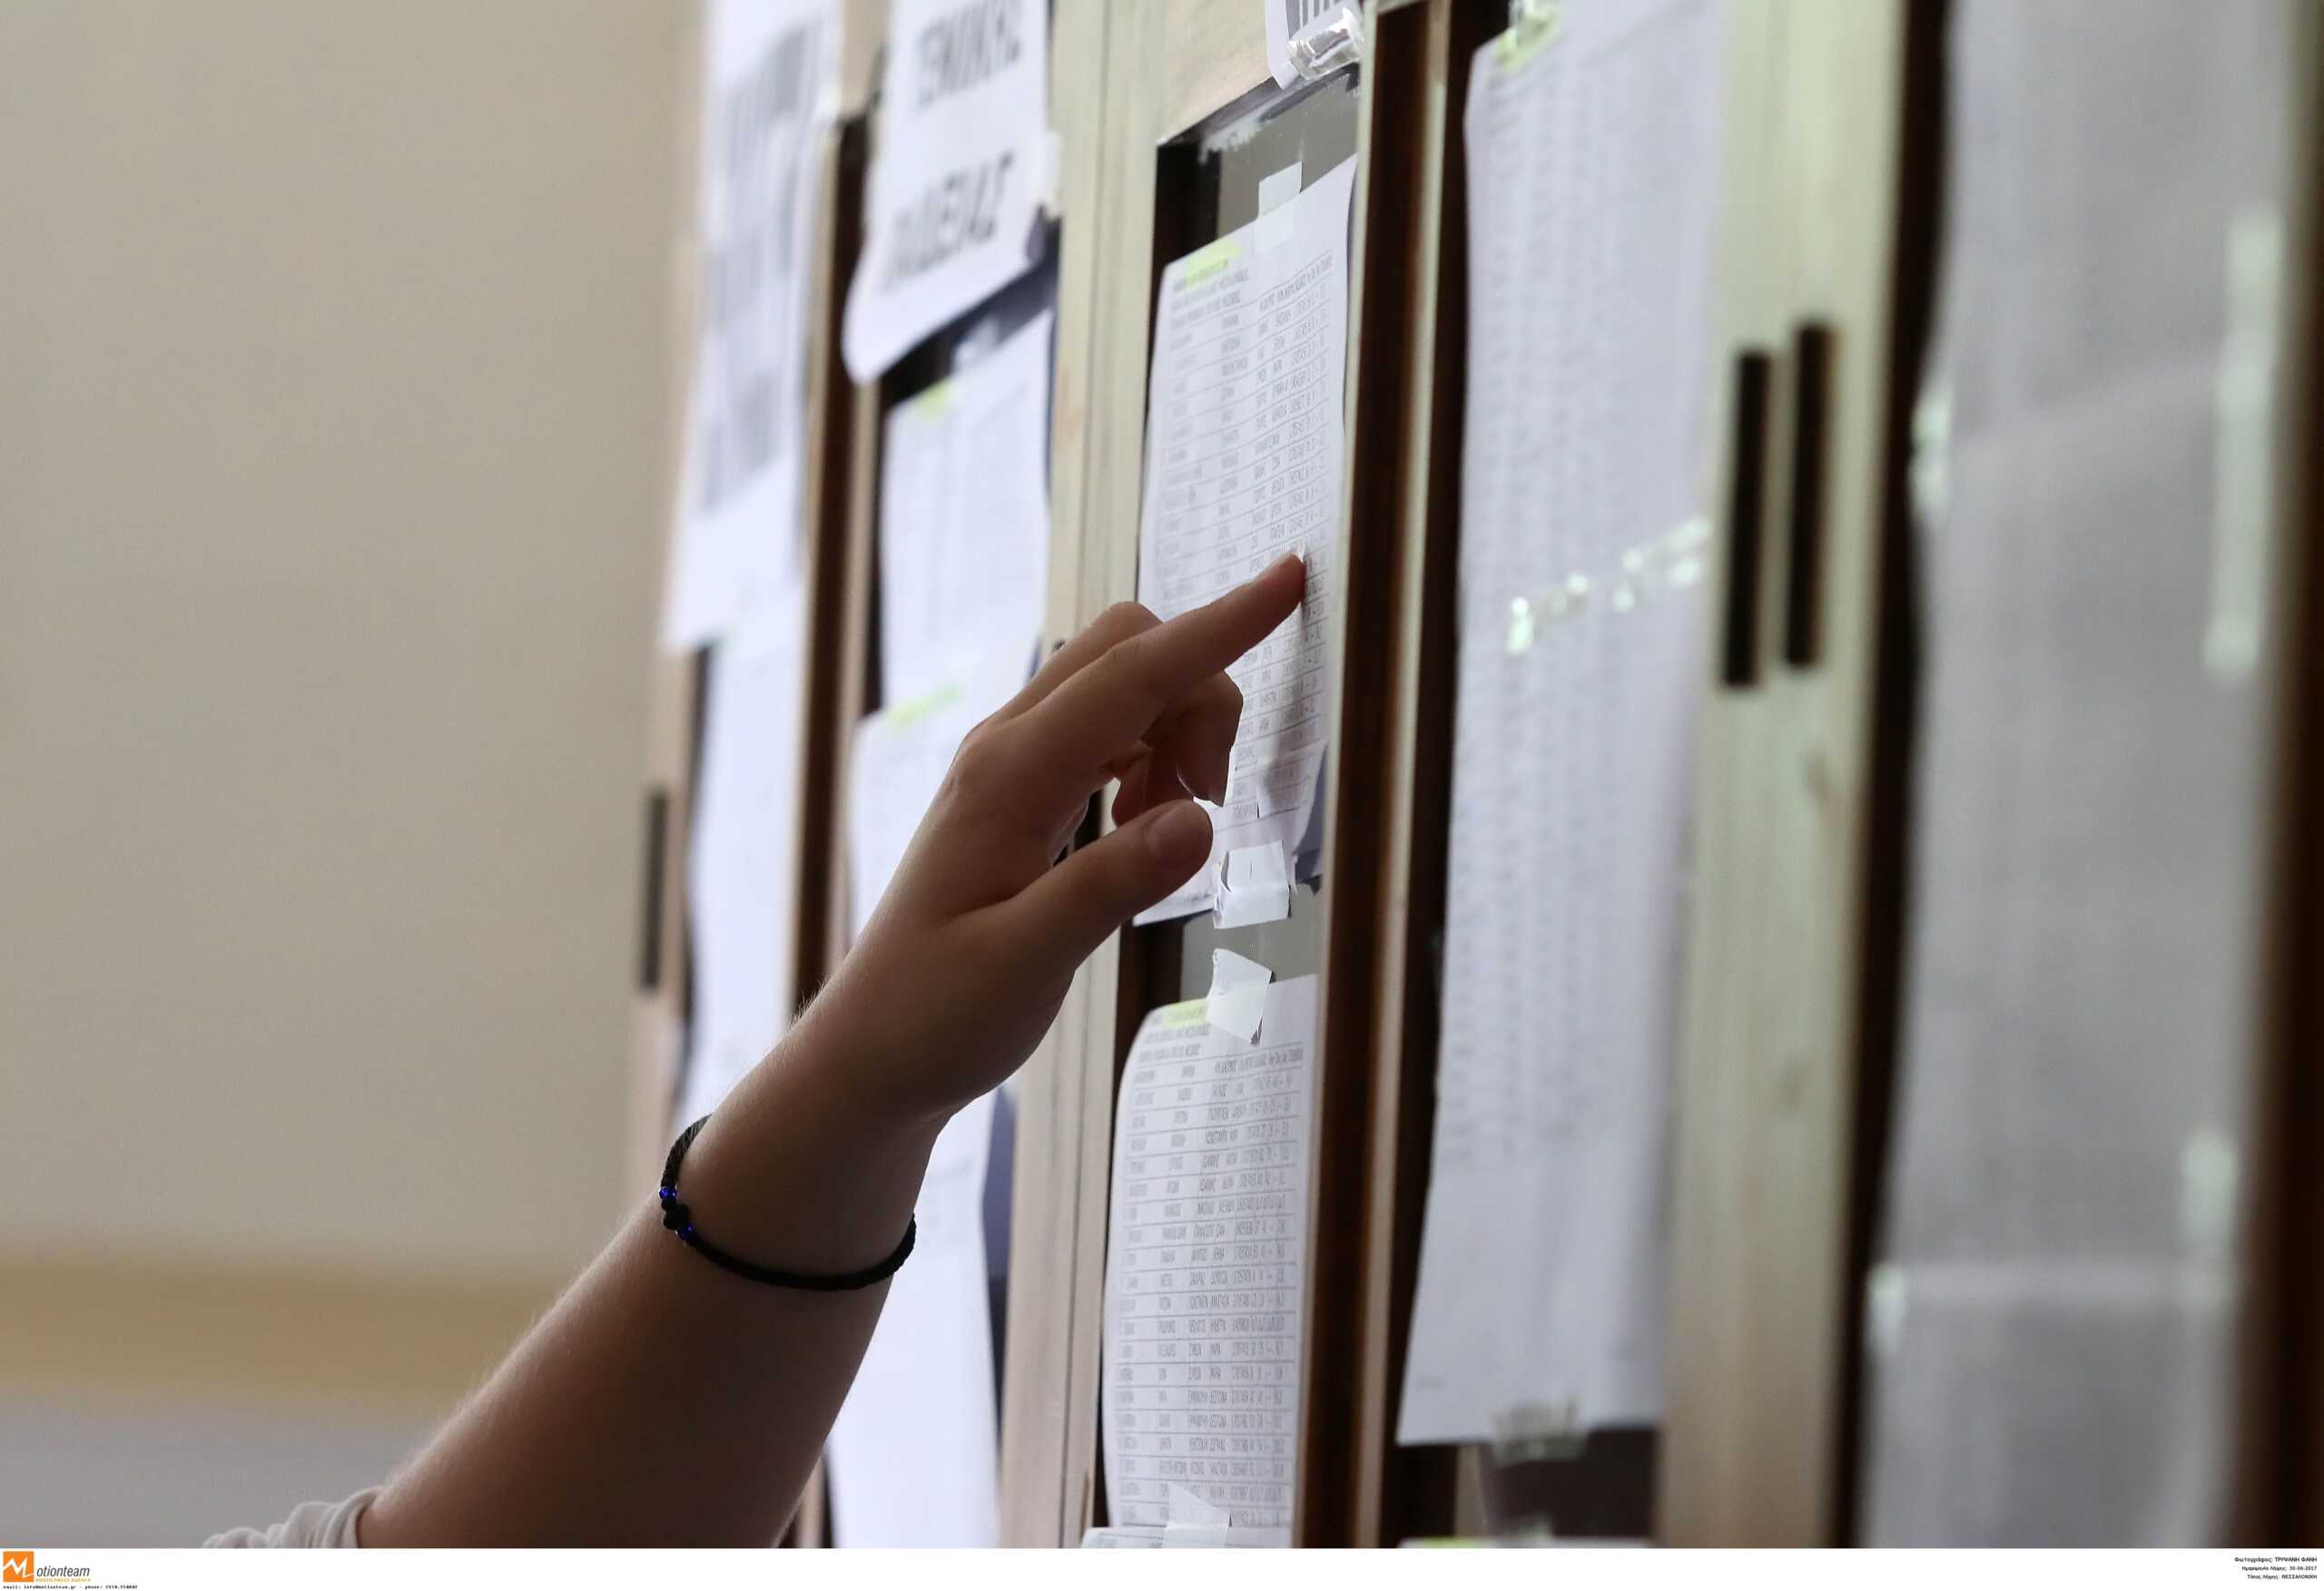 Πανελλήνιες εξετάσεις: Ανακοινώνονται σήμερα οι βαθμολογίες, αγωνία τέλος για τους υποψηφίους